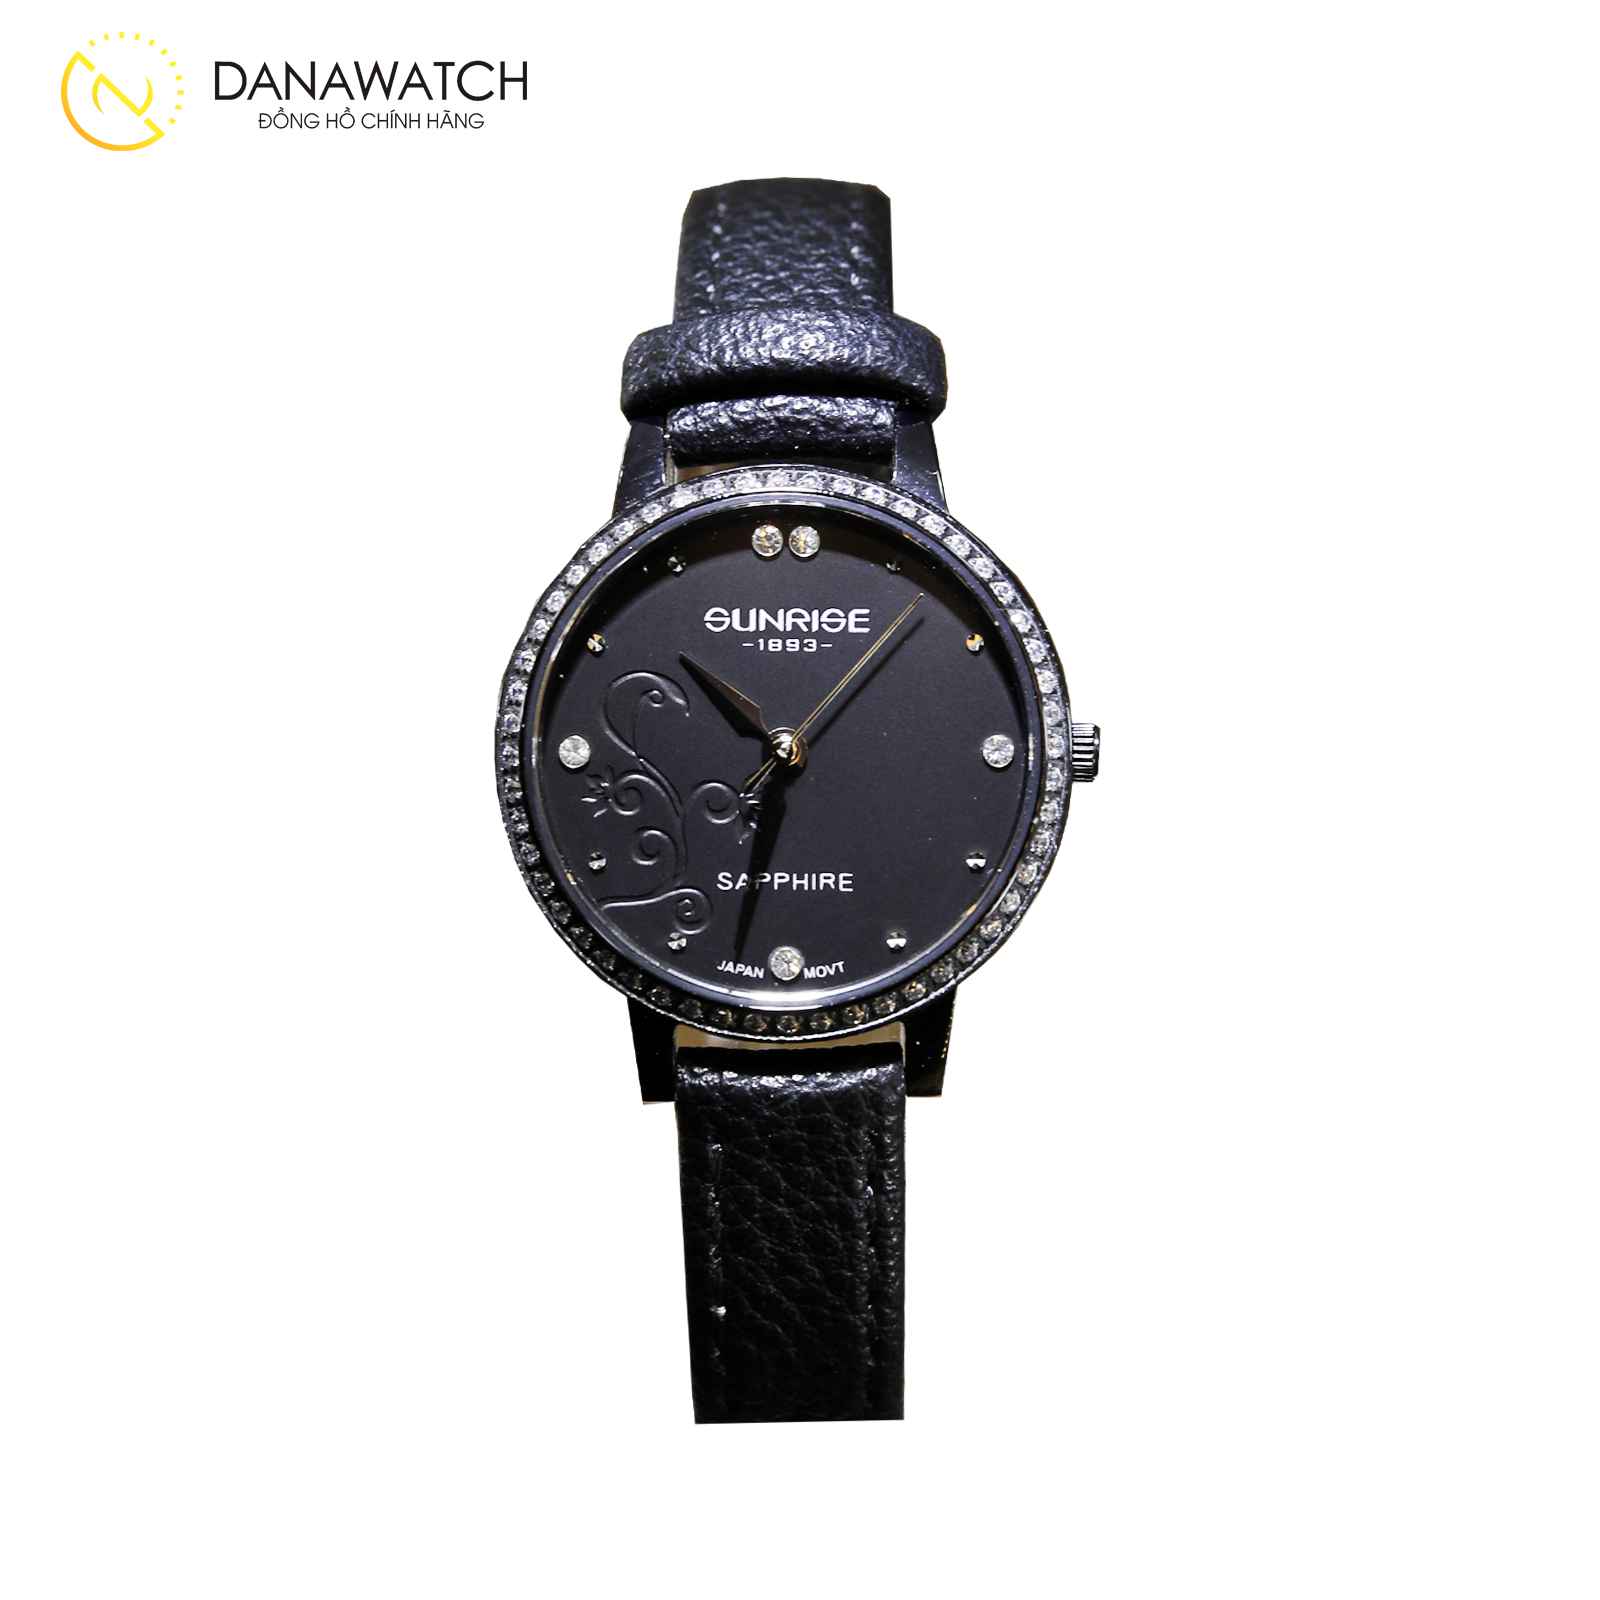 Đồng hồ Sunrise nữ chính hãng màu nâu trà dạng lắc tay sang chảnh 29mm -  DWatch Authentic